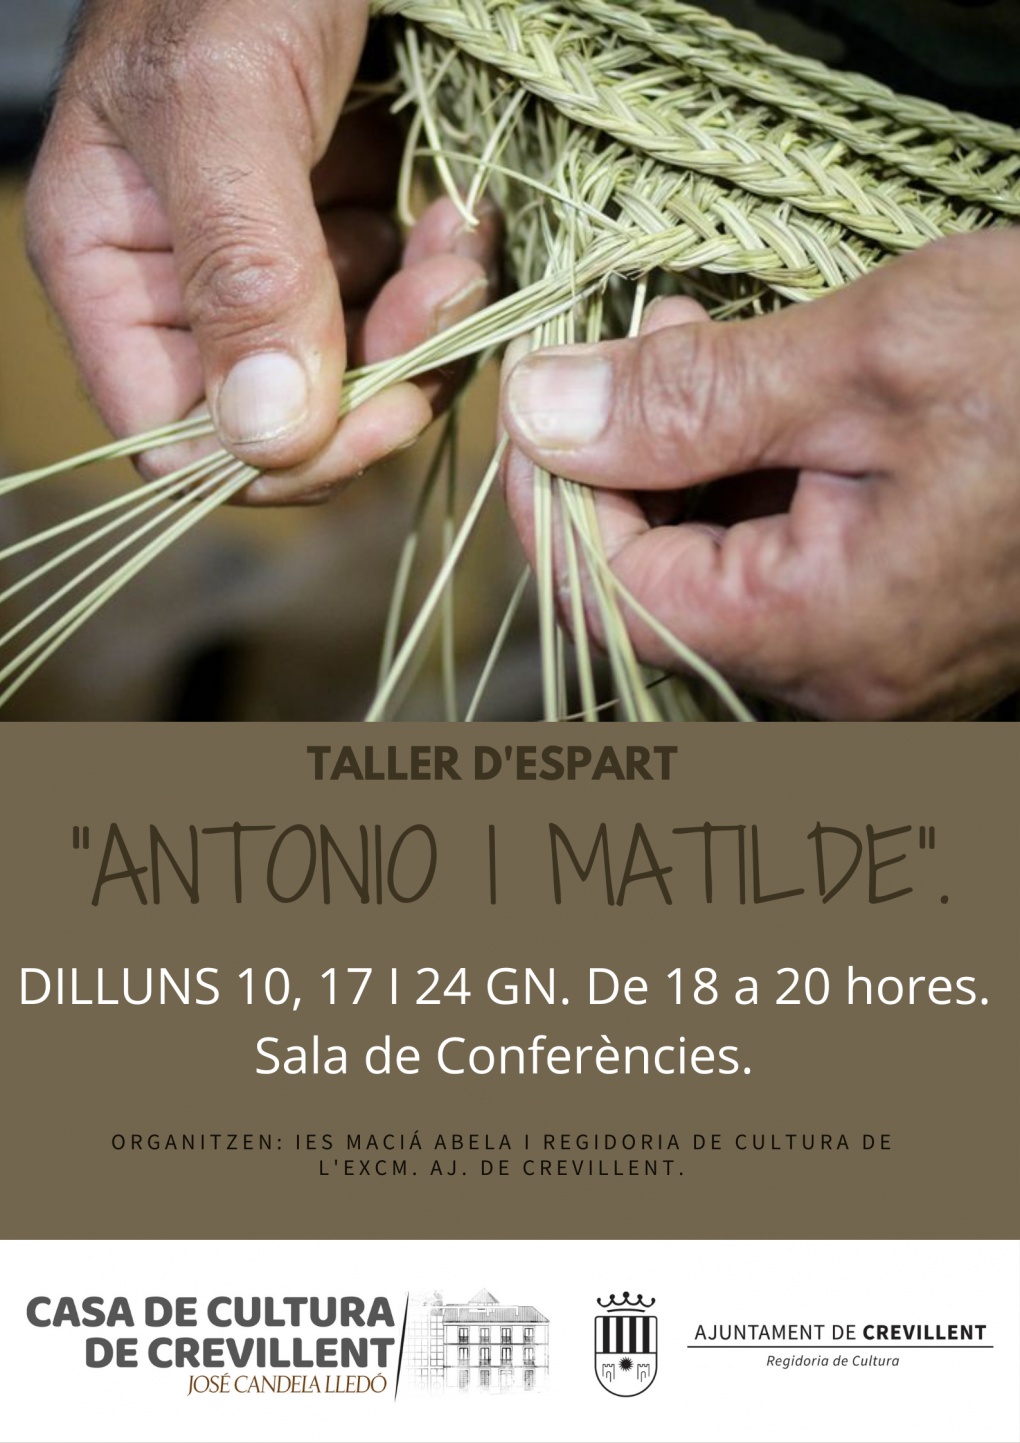 TALLER D'ESPART “ANTONIO I MATILDE”.